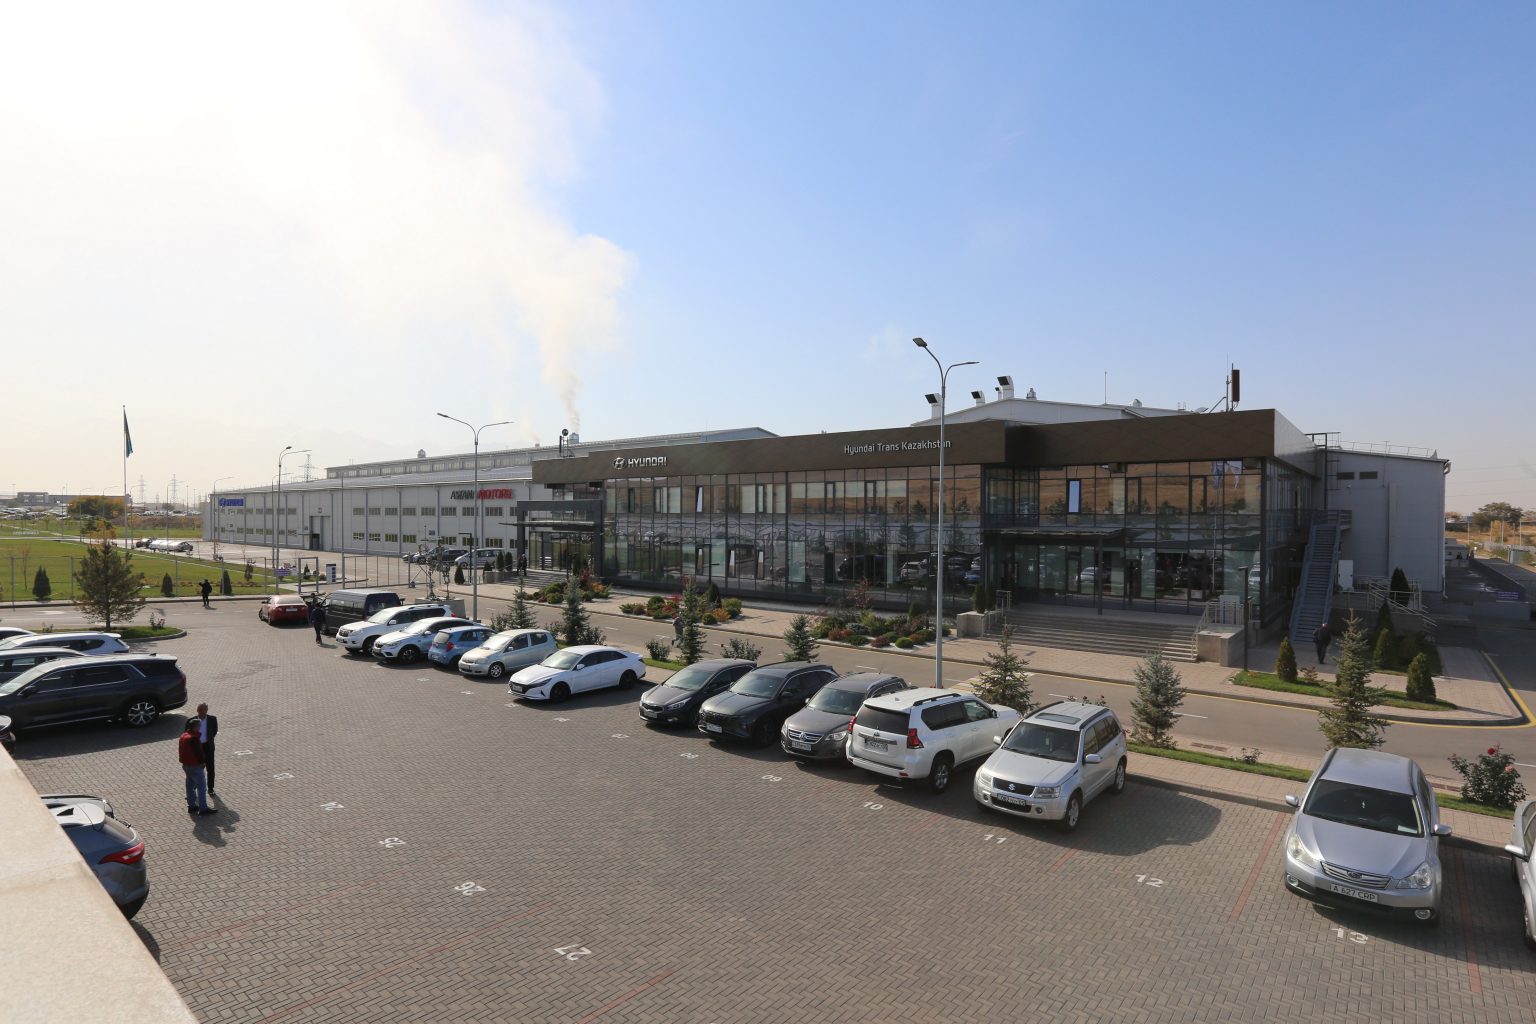 20,6 тыс. автомобилей выпустил завод Hyundai Trans Kazakhstan в ИЗА